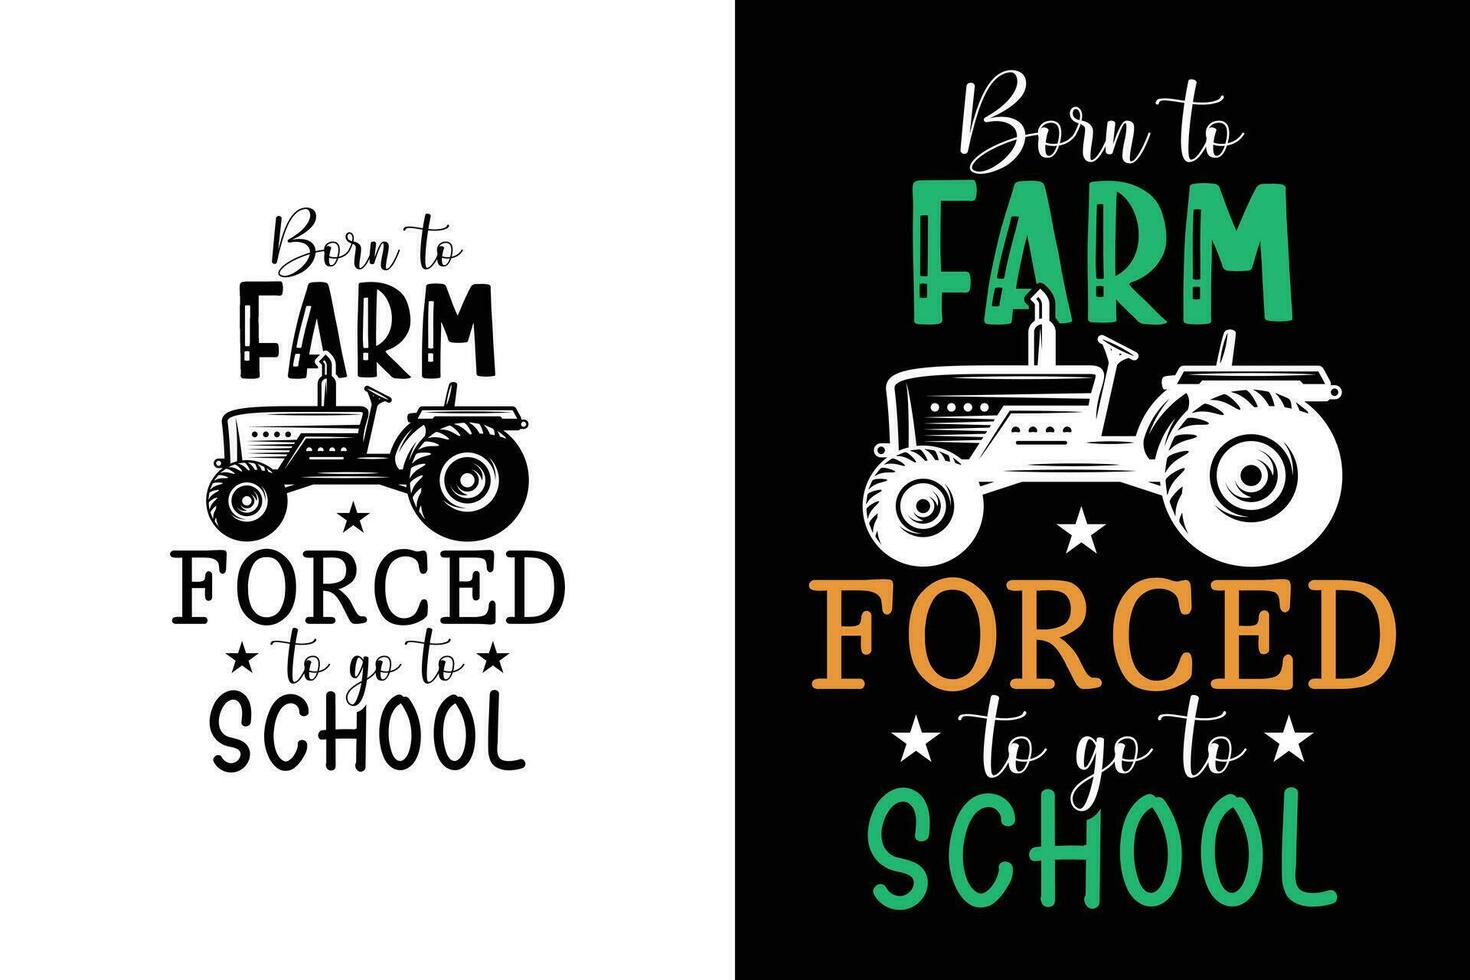 nacido a granja forzado a Vamos a colegio gracioso agricultura césped cortacésped agricultura camiseta vector